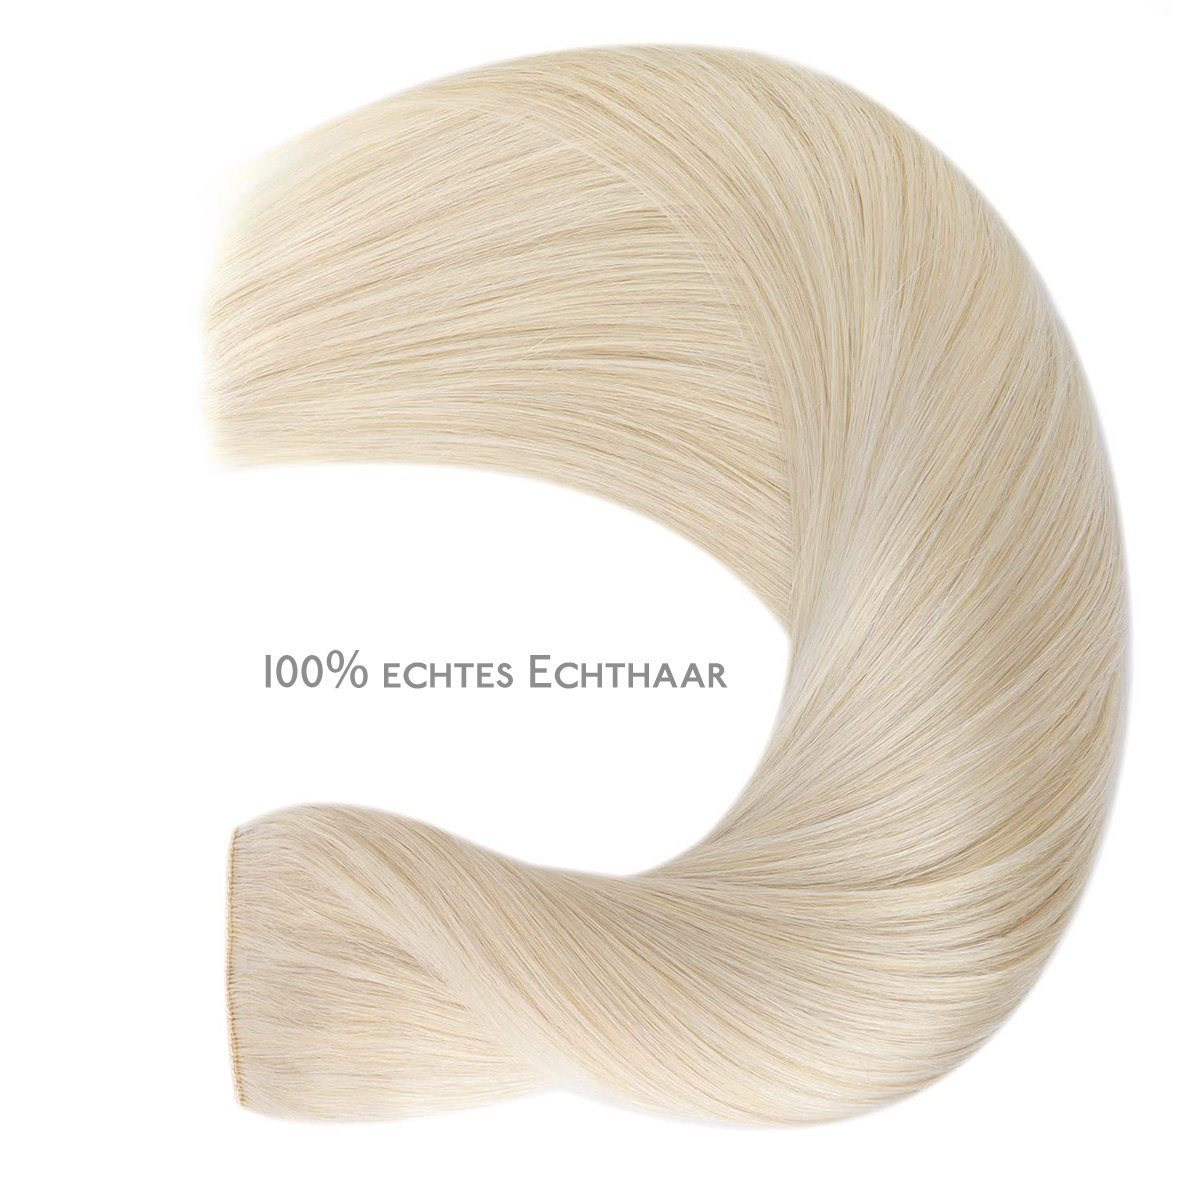 Echthaar-Extension Wennalife glatte Haarteile,platinblond Echthaarverlängerungen,Halo-Haare,lange